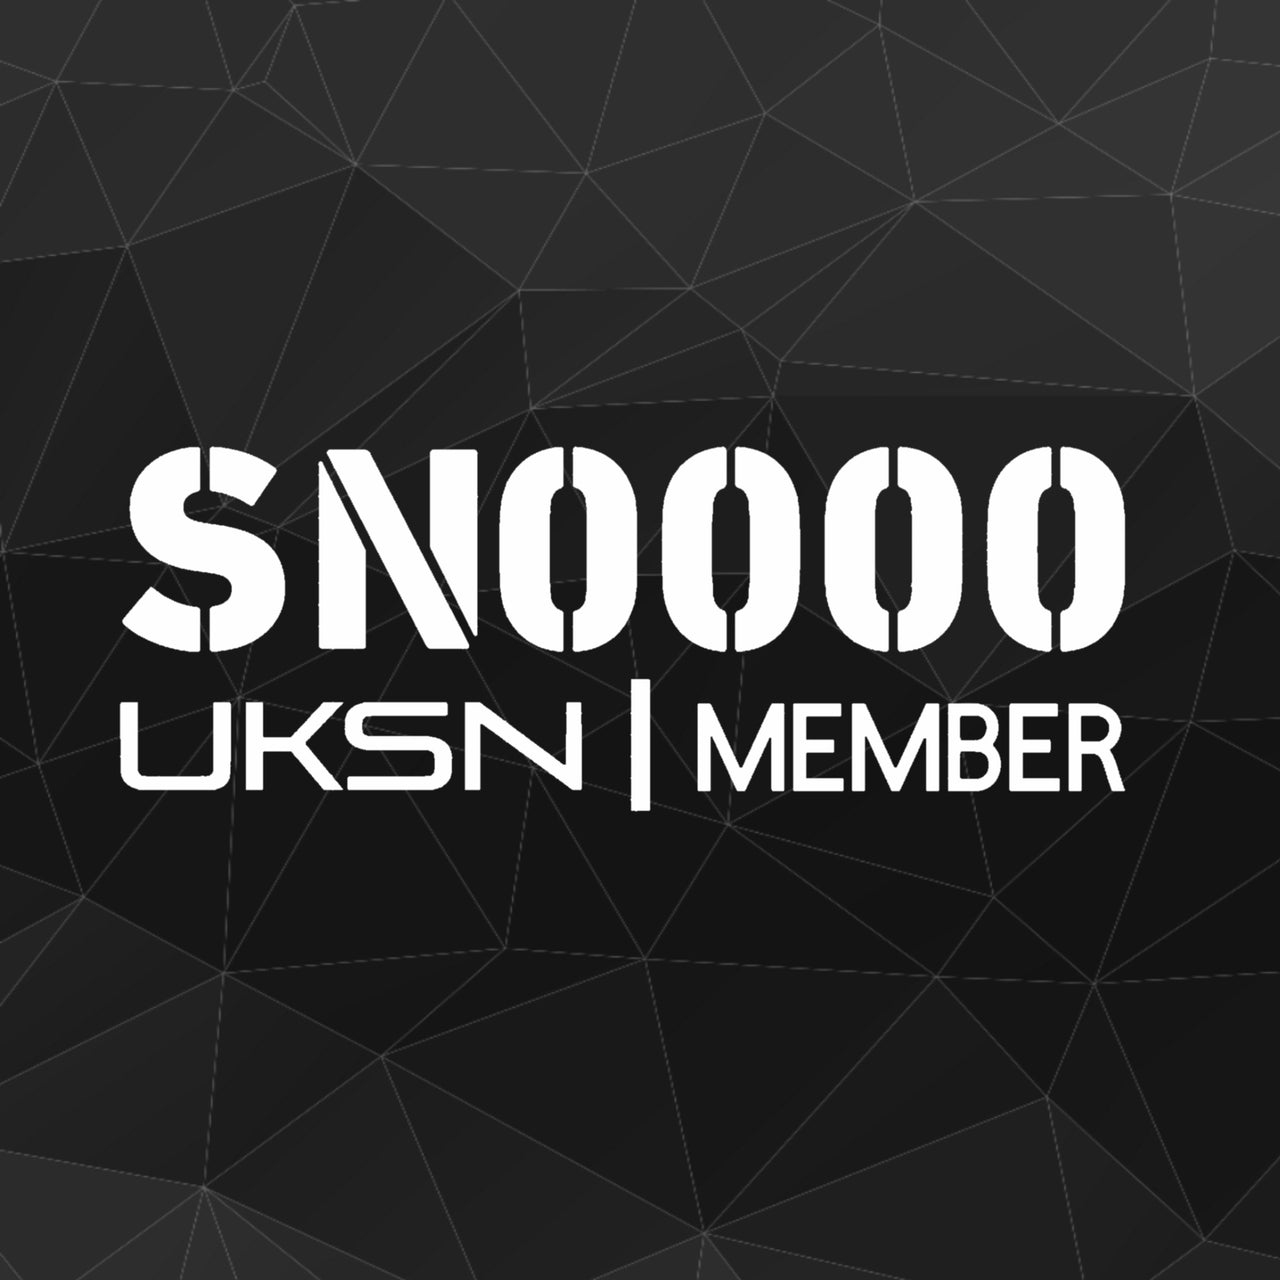 UKSN Personalised Membership Decal